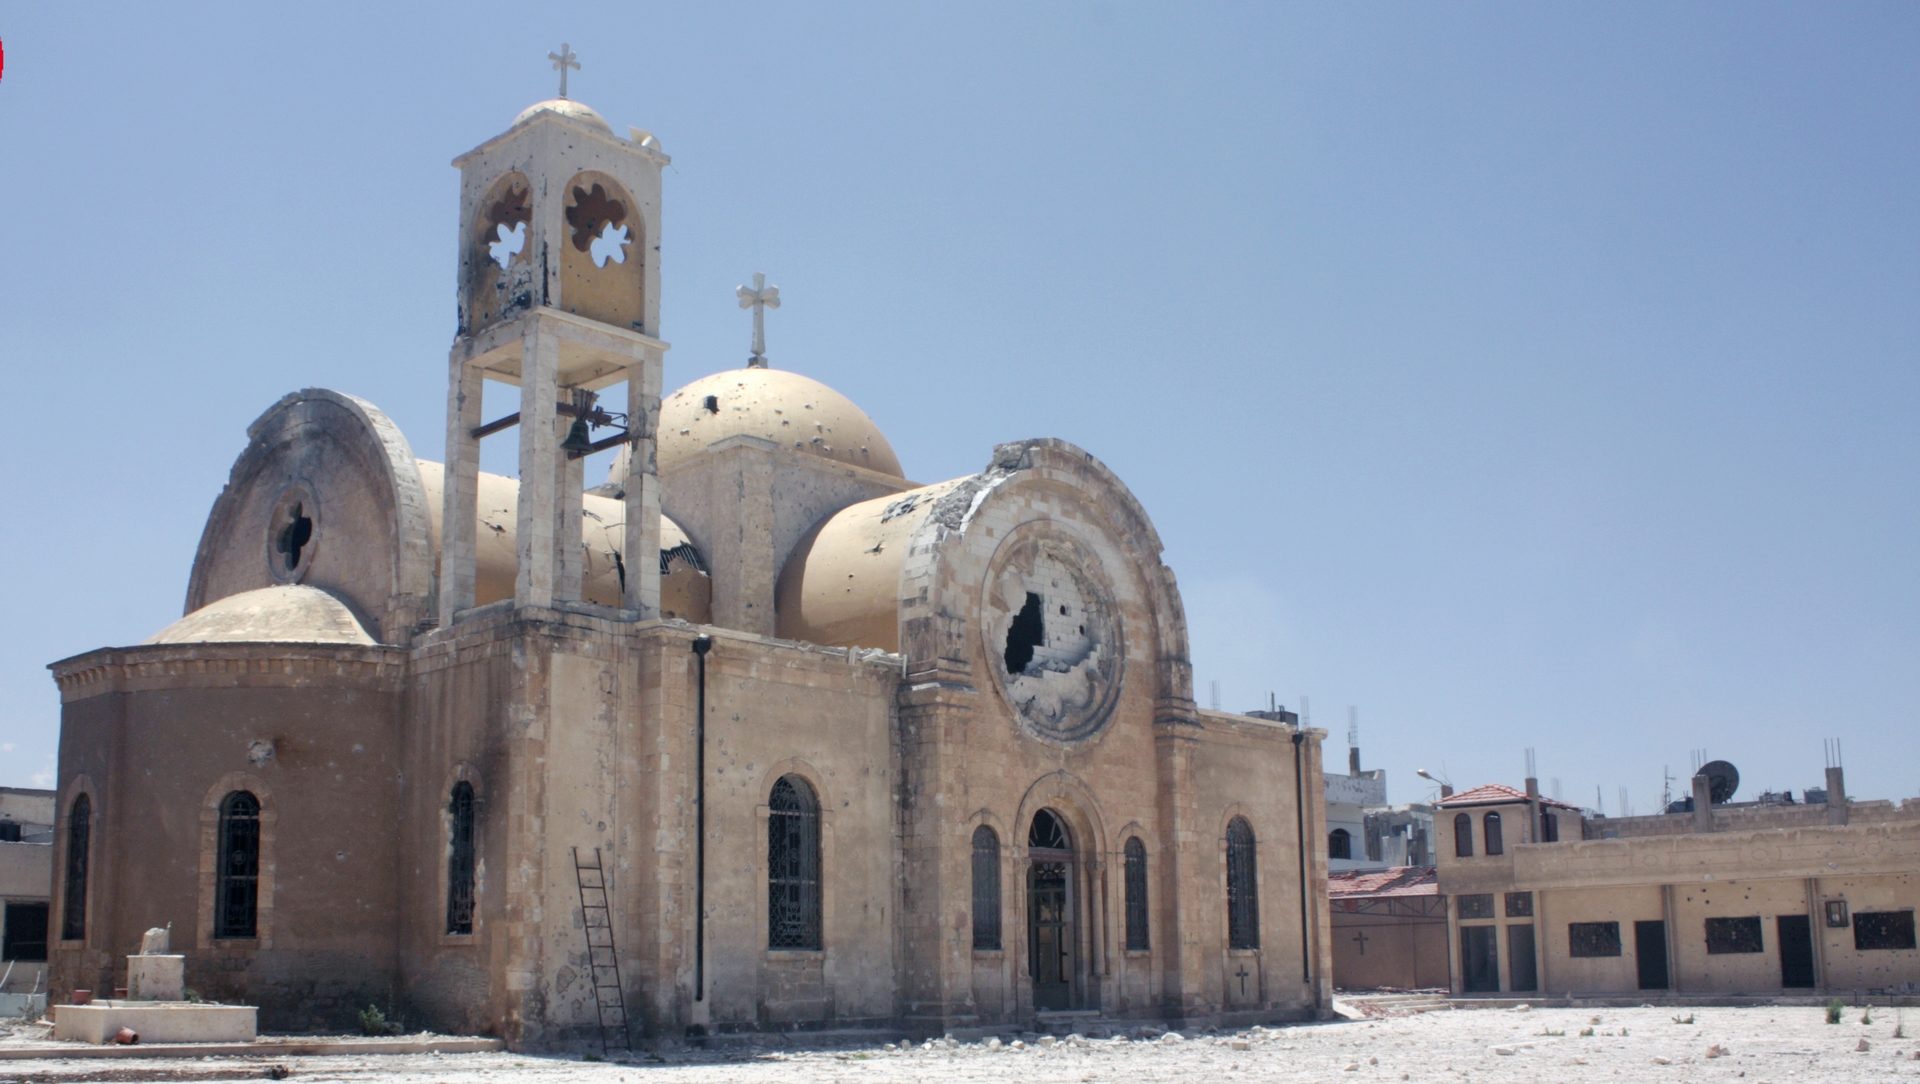 La cathédrale grecque-melkite de Homs avant sa restauration | © AED 